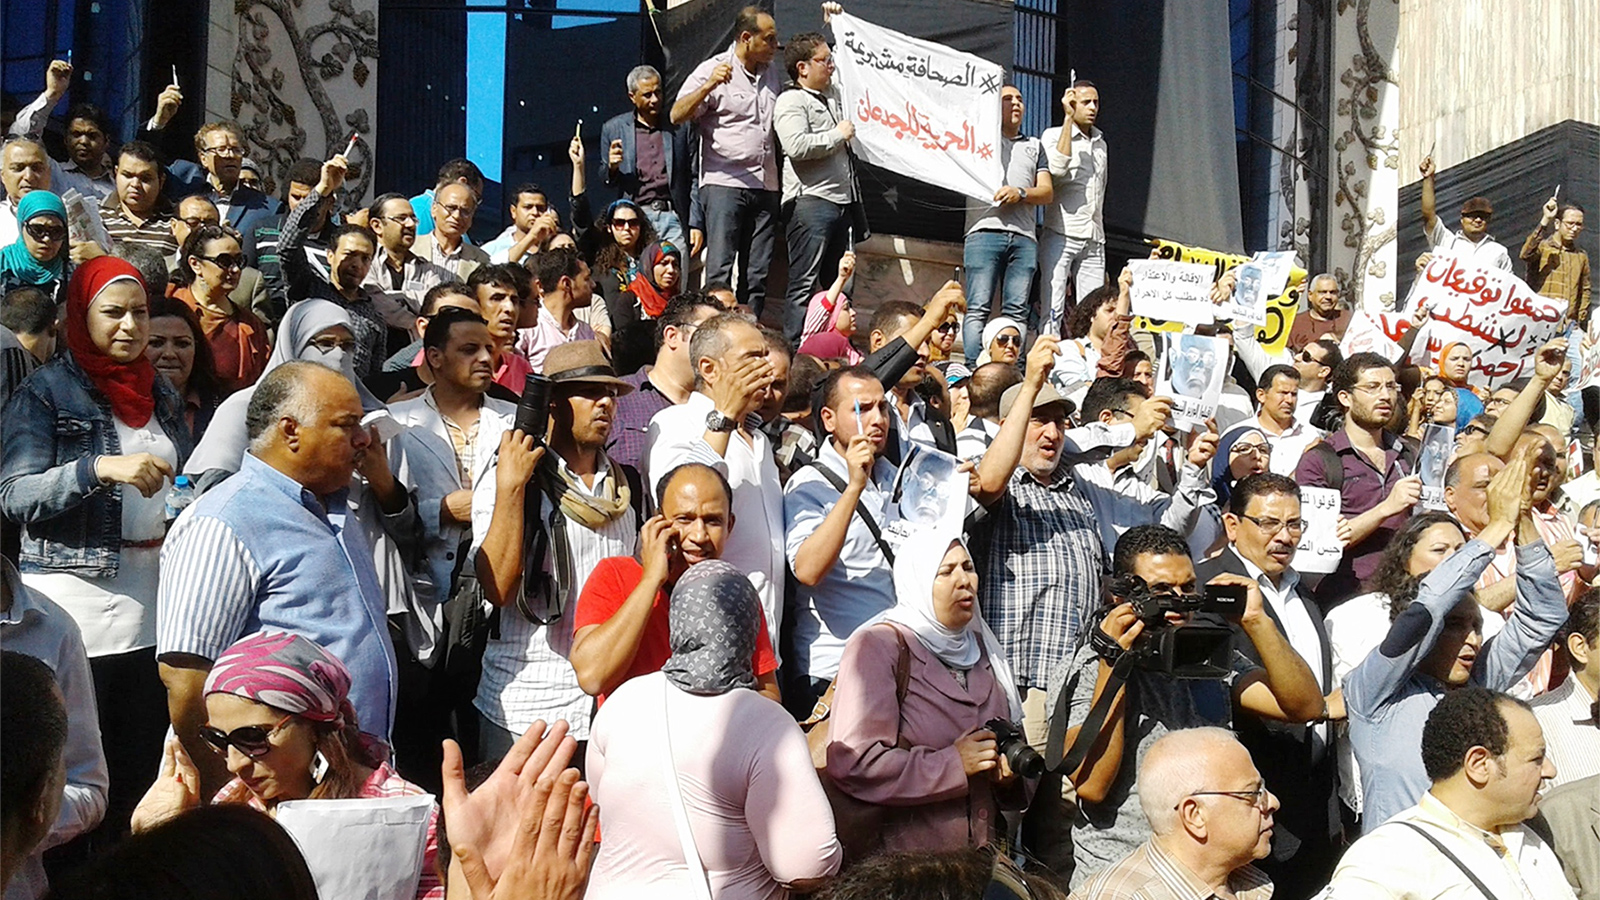 ساحة نقابة الصحفيين شهدت احتجاجات عديدة على تغول السلطة ضد الصحافة (الجزيرة)